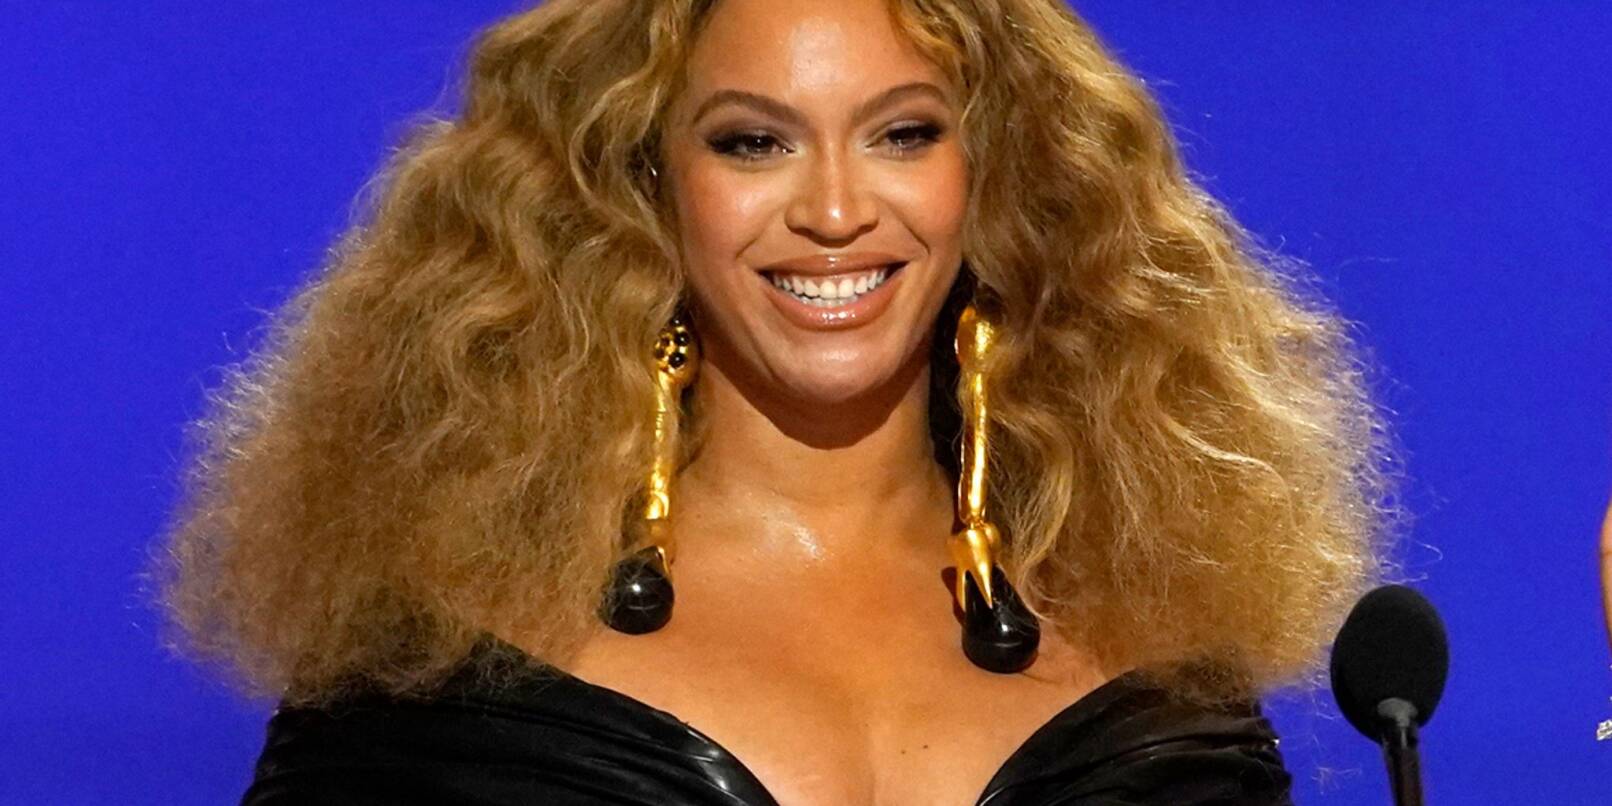 Sängerin Beyoncé führt als erste schwarze Frau die US-Charts der Country-Alben an.